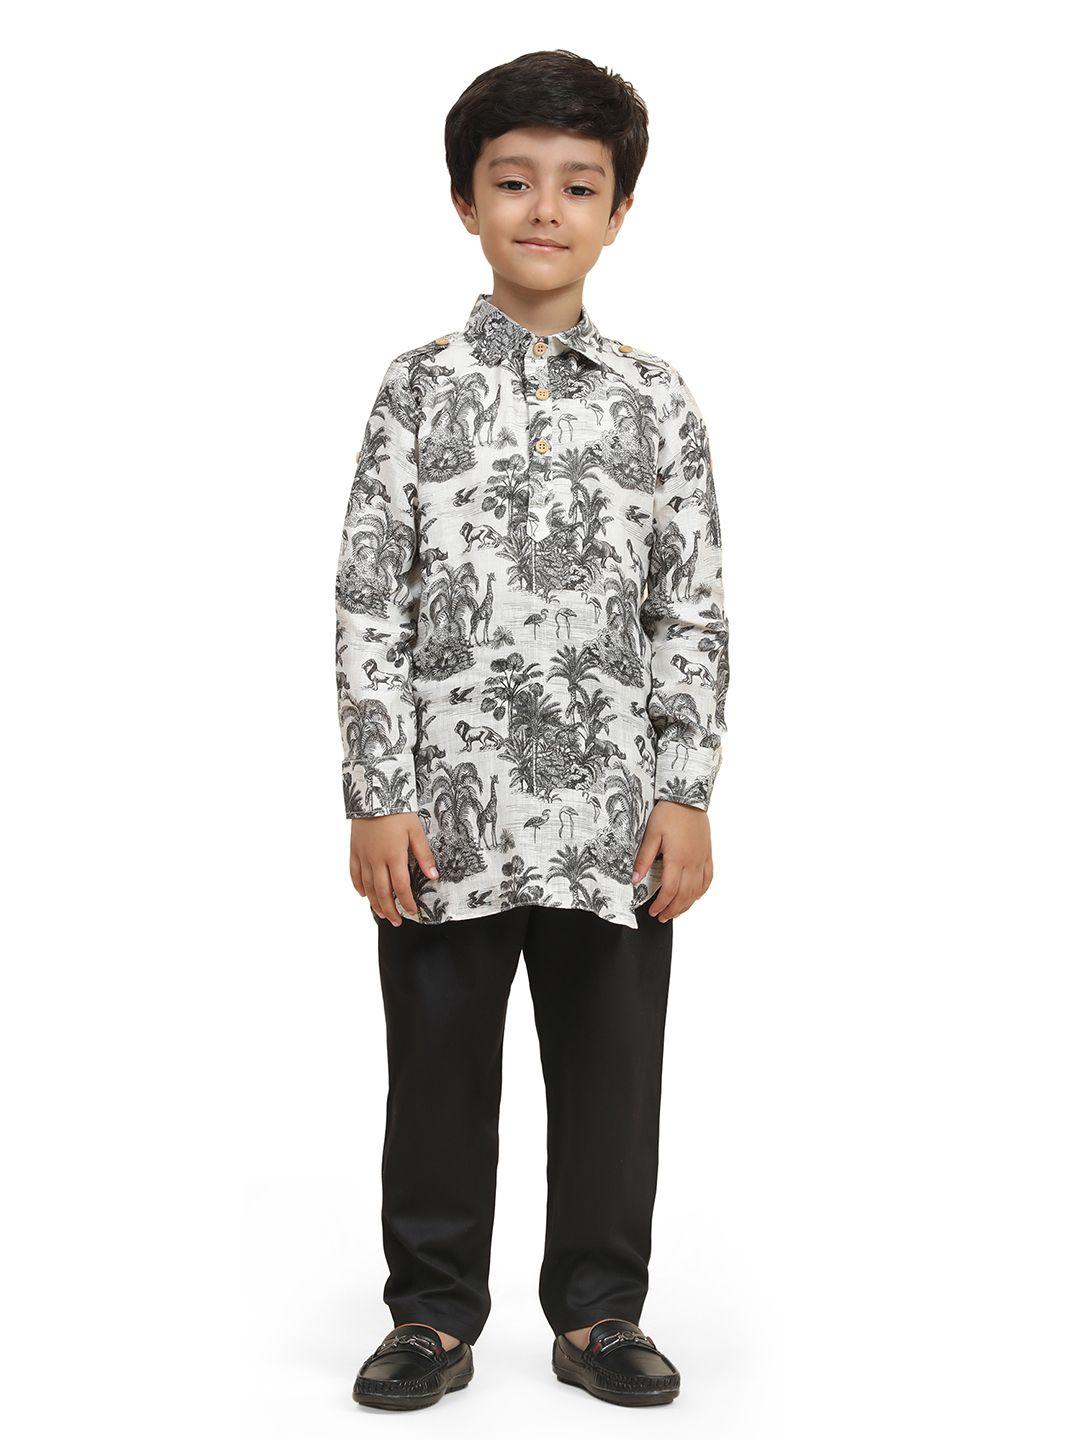 baesd boys floral printed shirt collar regular kurta with pyjamas